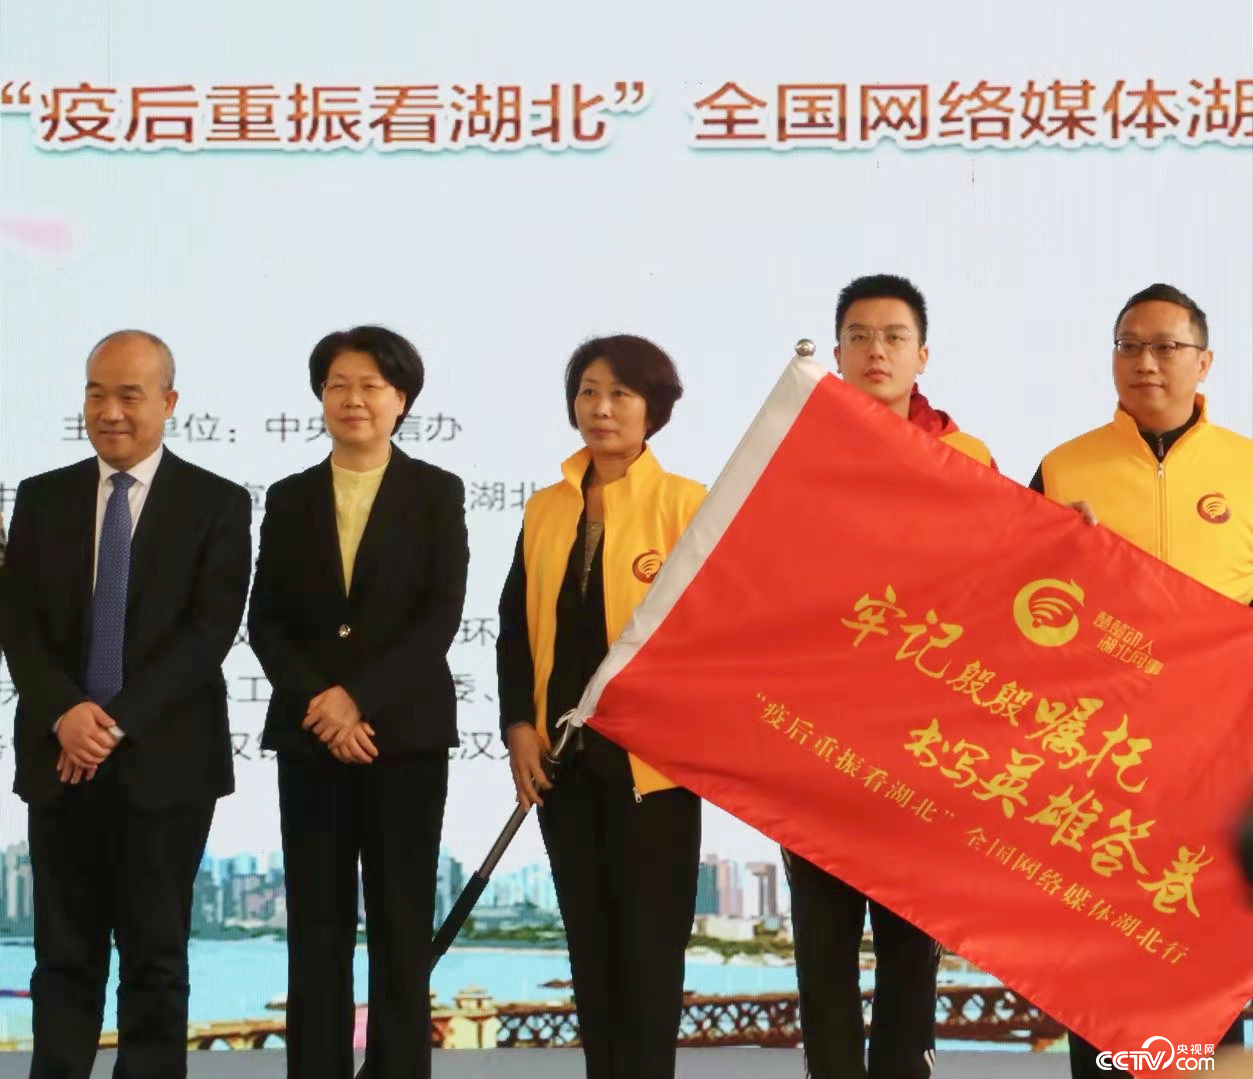 活动现场，湖北省副省长肖菊华为网络主题活动授旗。